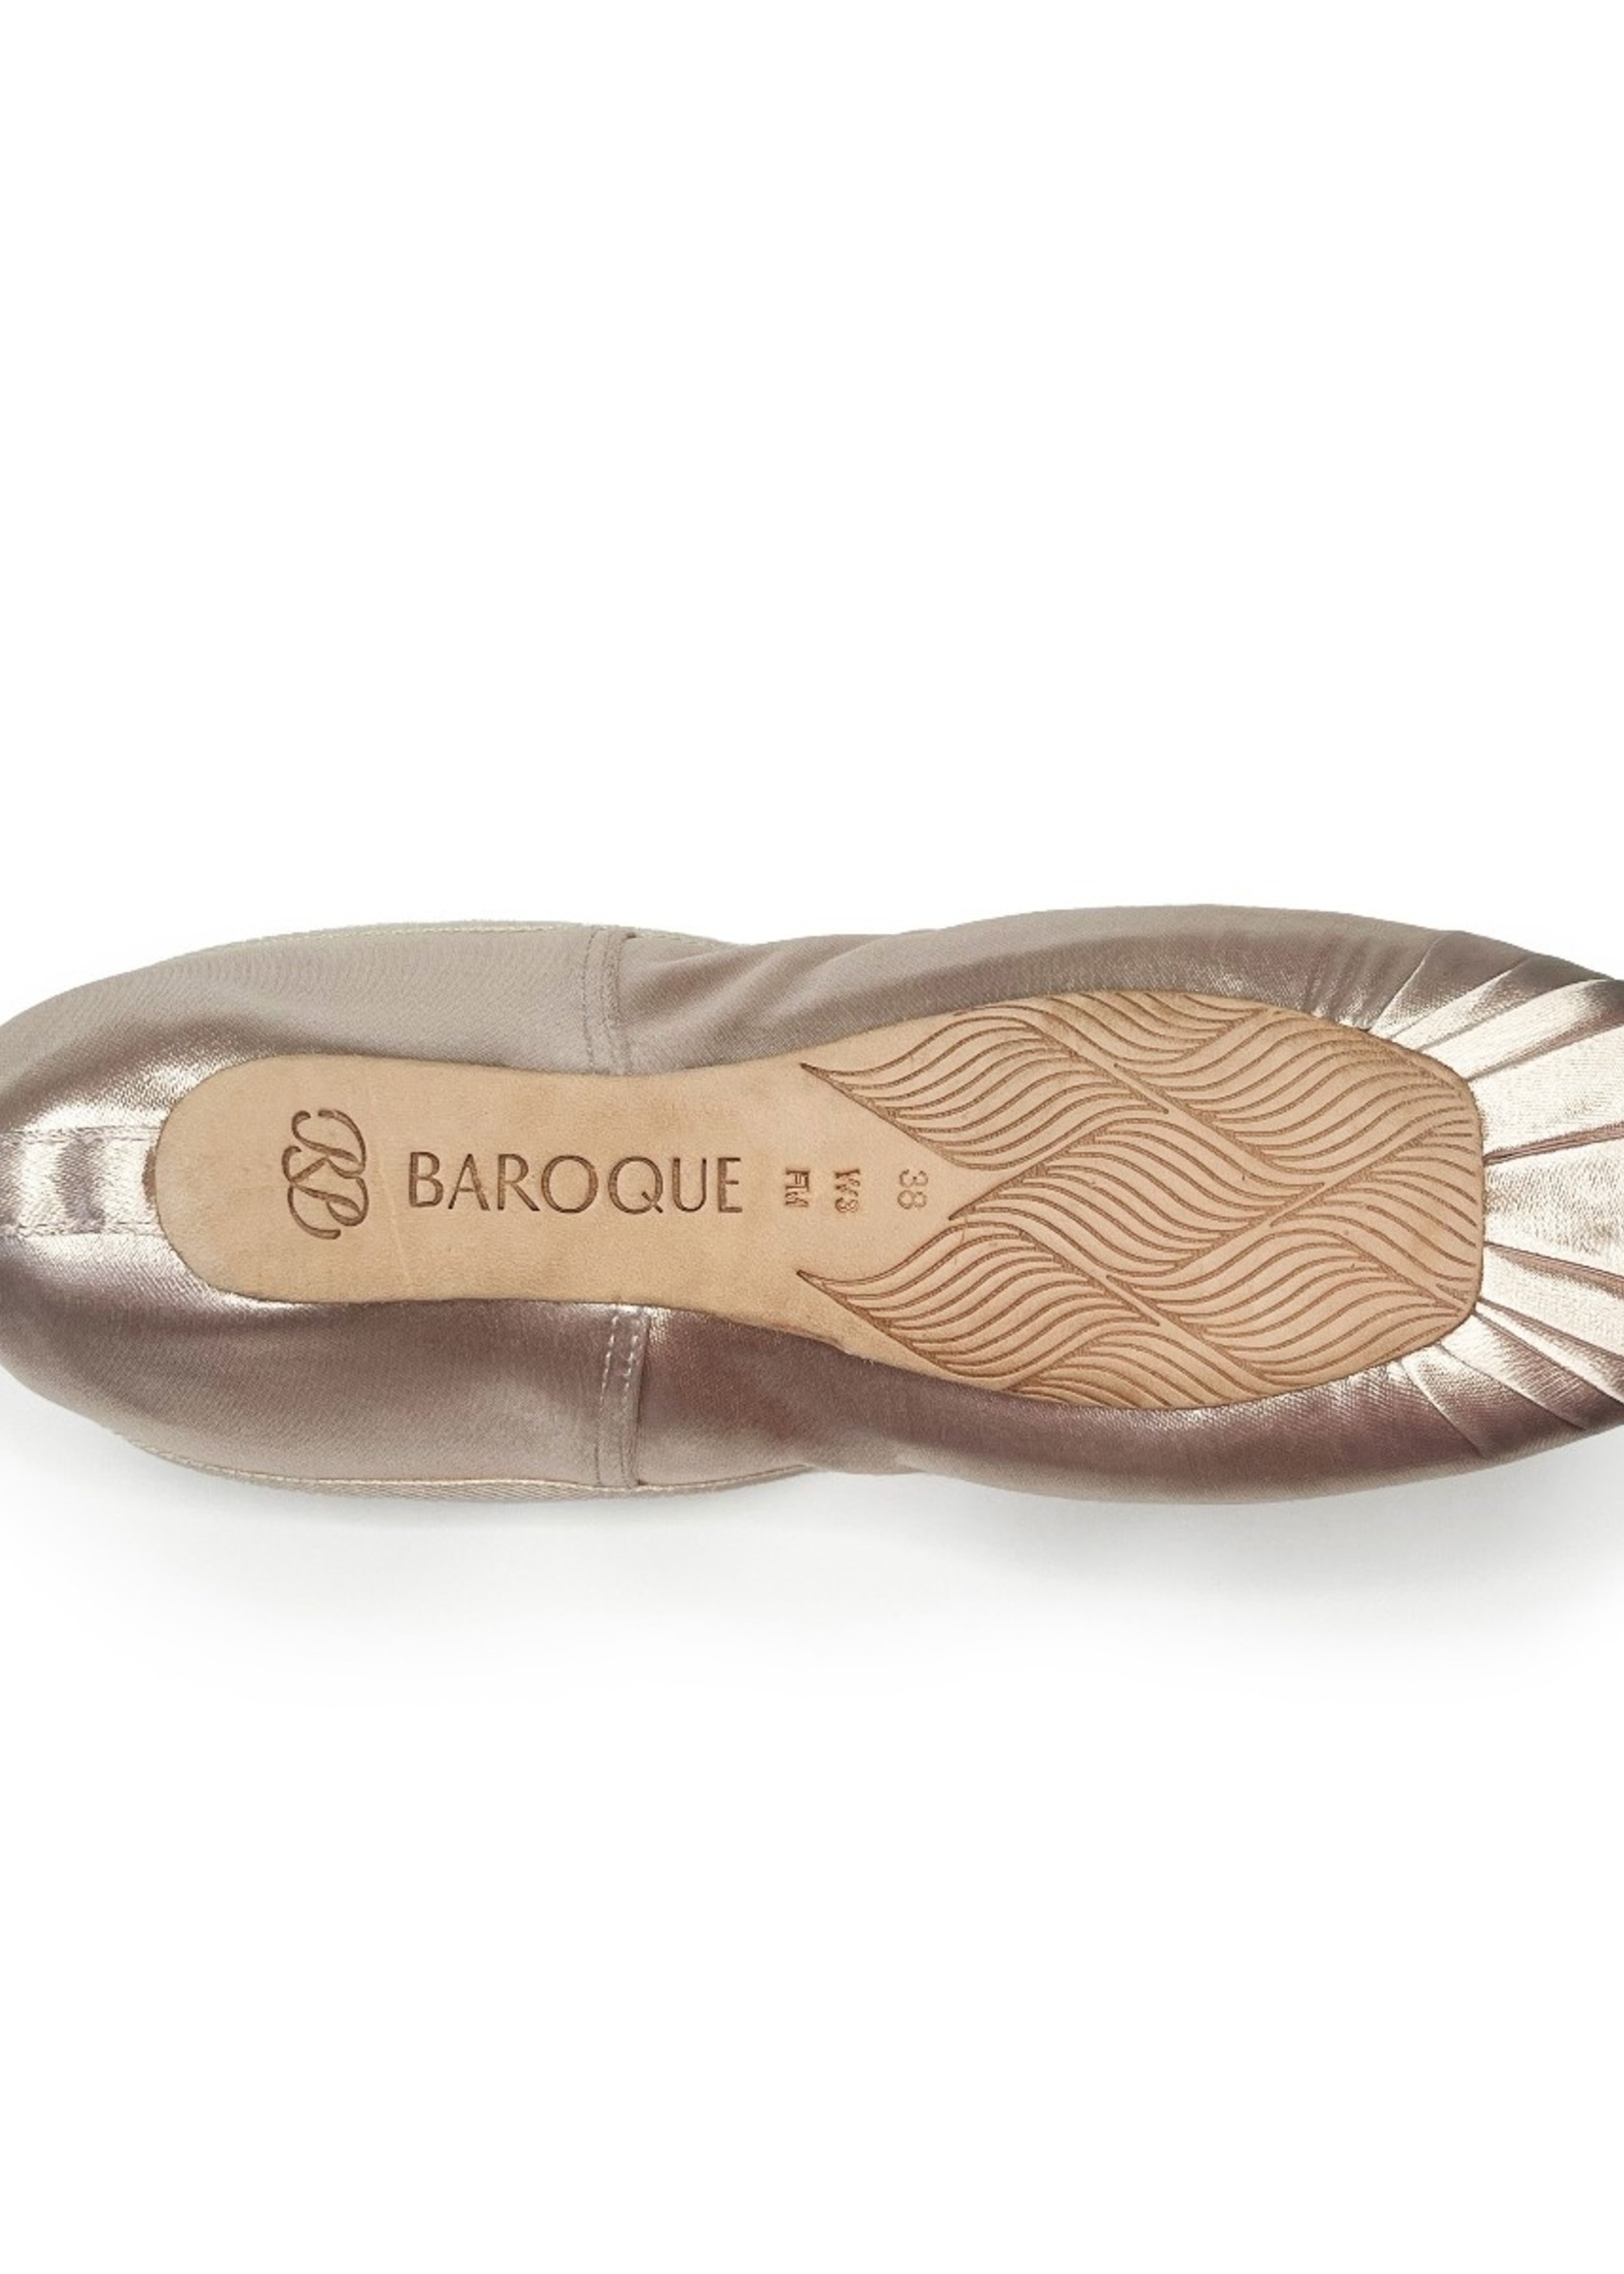 RP Collection Baroque Satin Pointe Shoe